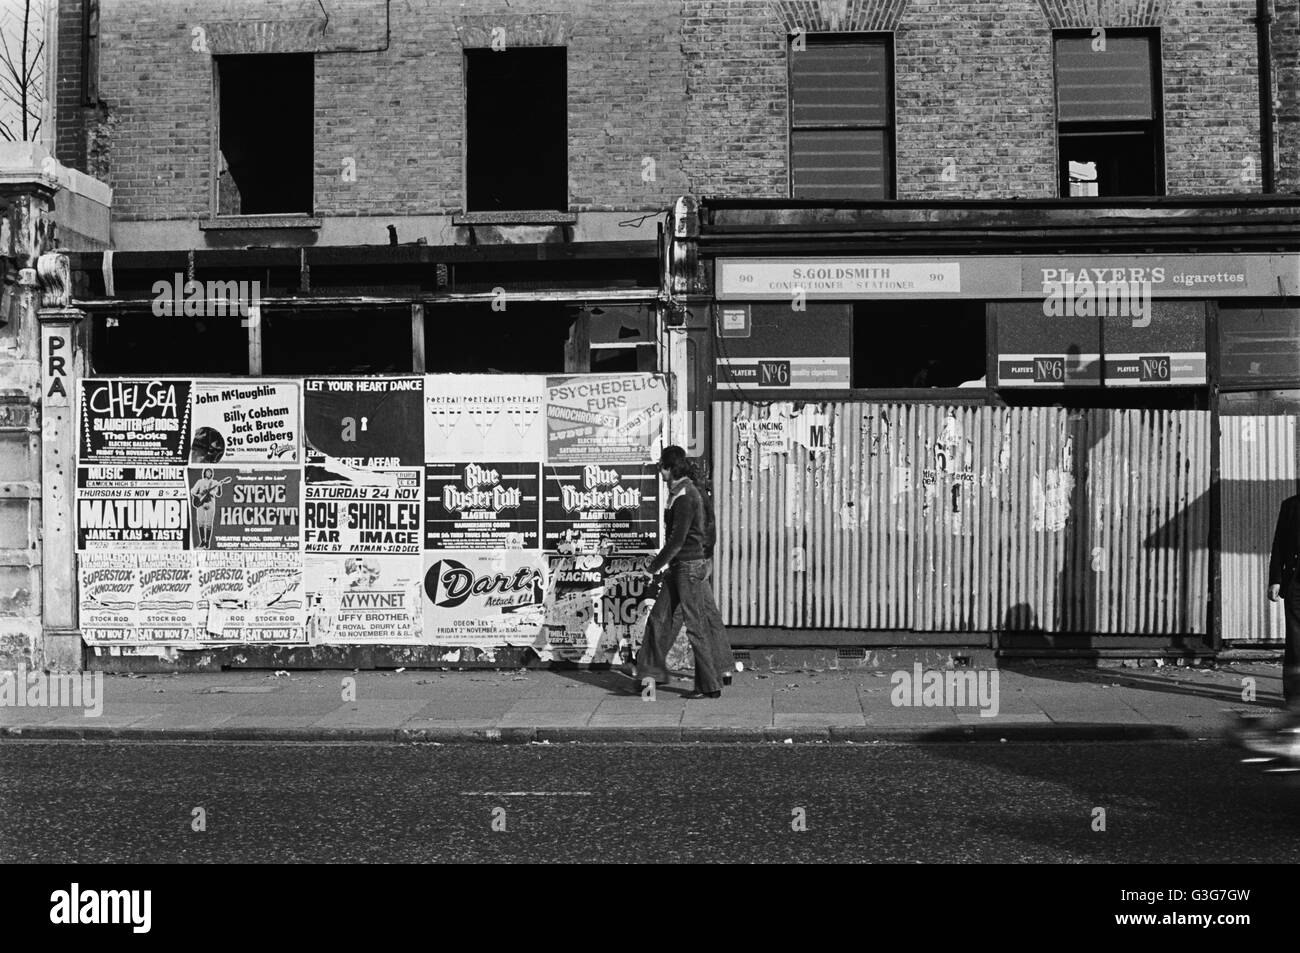 Immagine di archivio di un uomo in flares e una donna passato a piedi negozi abbandonati intonacate con manifesti pubblicitari, Lambeth, Londra, Inghilterra, 1979 Londra 1970s Foto Stock